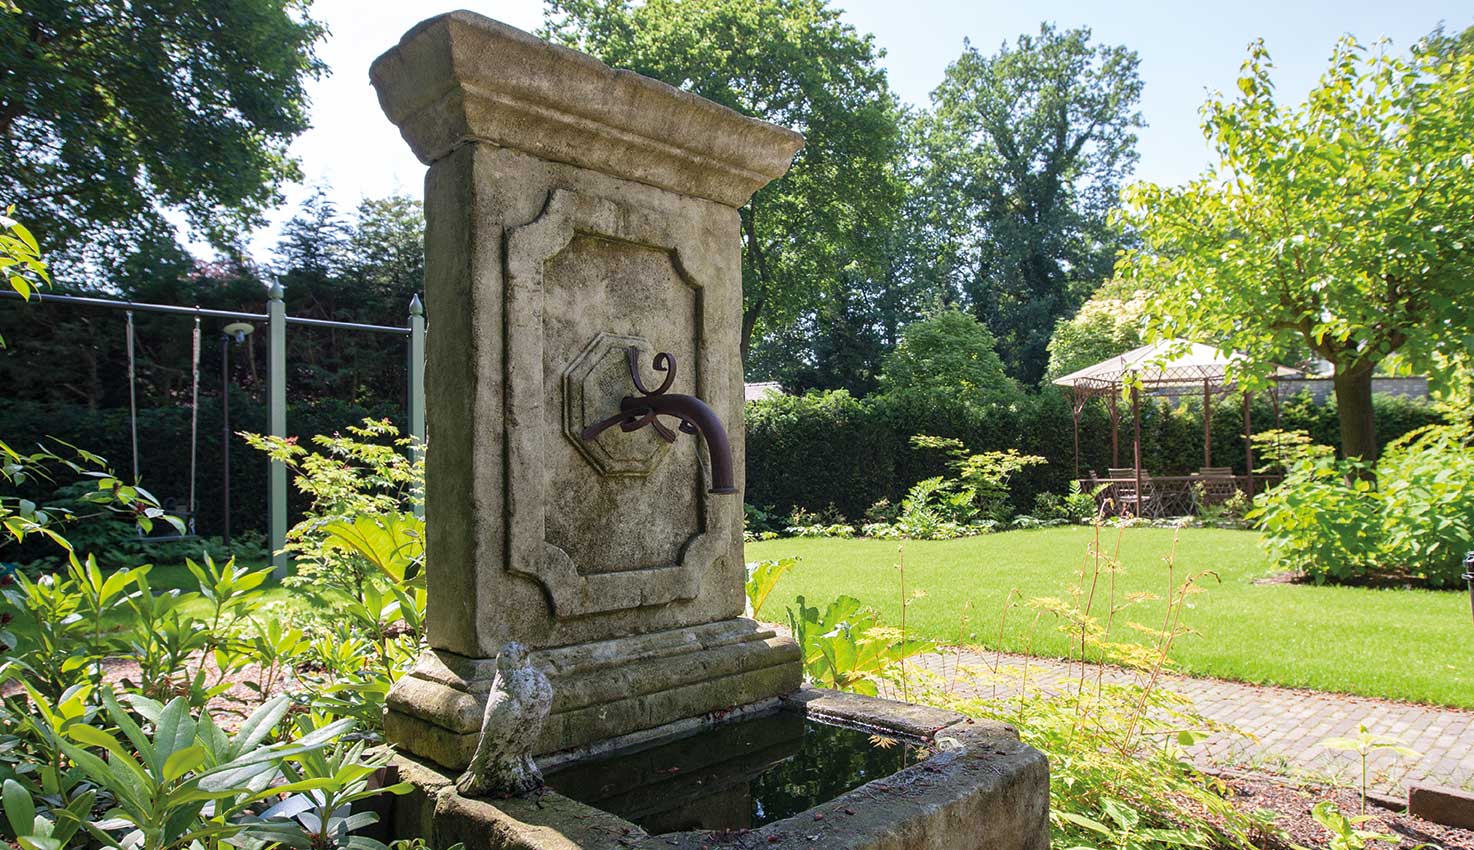 Klassieke tuin in Nunspeet met chique beplanting en blikvangers als een fontein, sierlijke lampen en antieke ornamenten rondom monumentale villa.